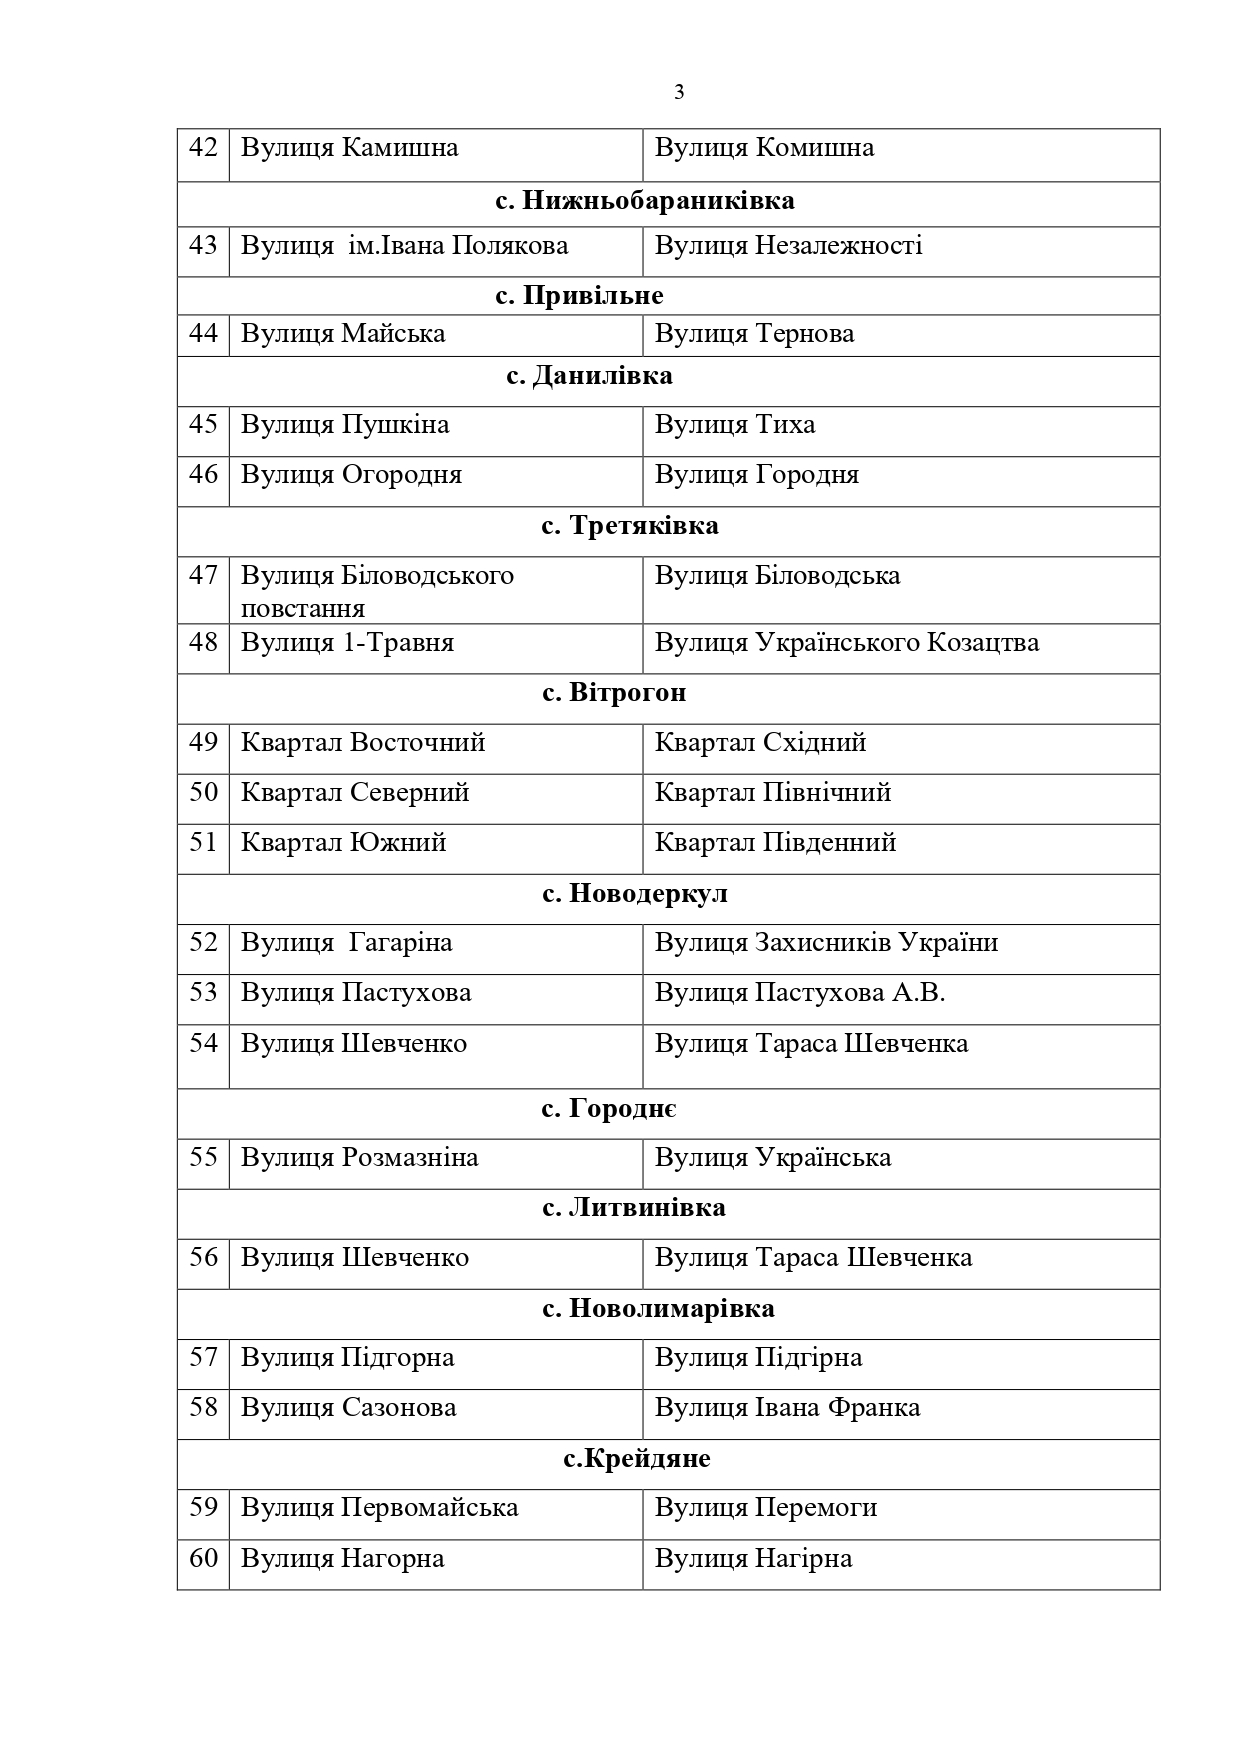 "Декомунізація" на Біловодщині: перейміновано 67 обʼєктів